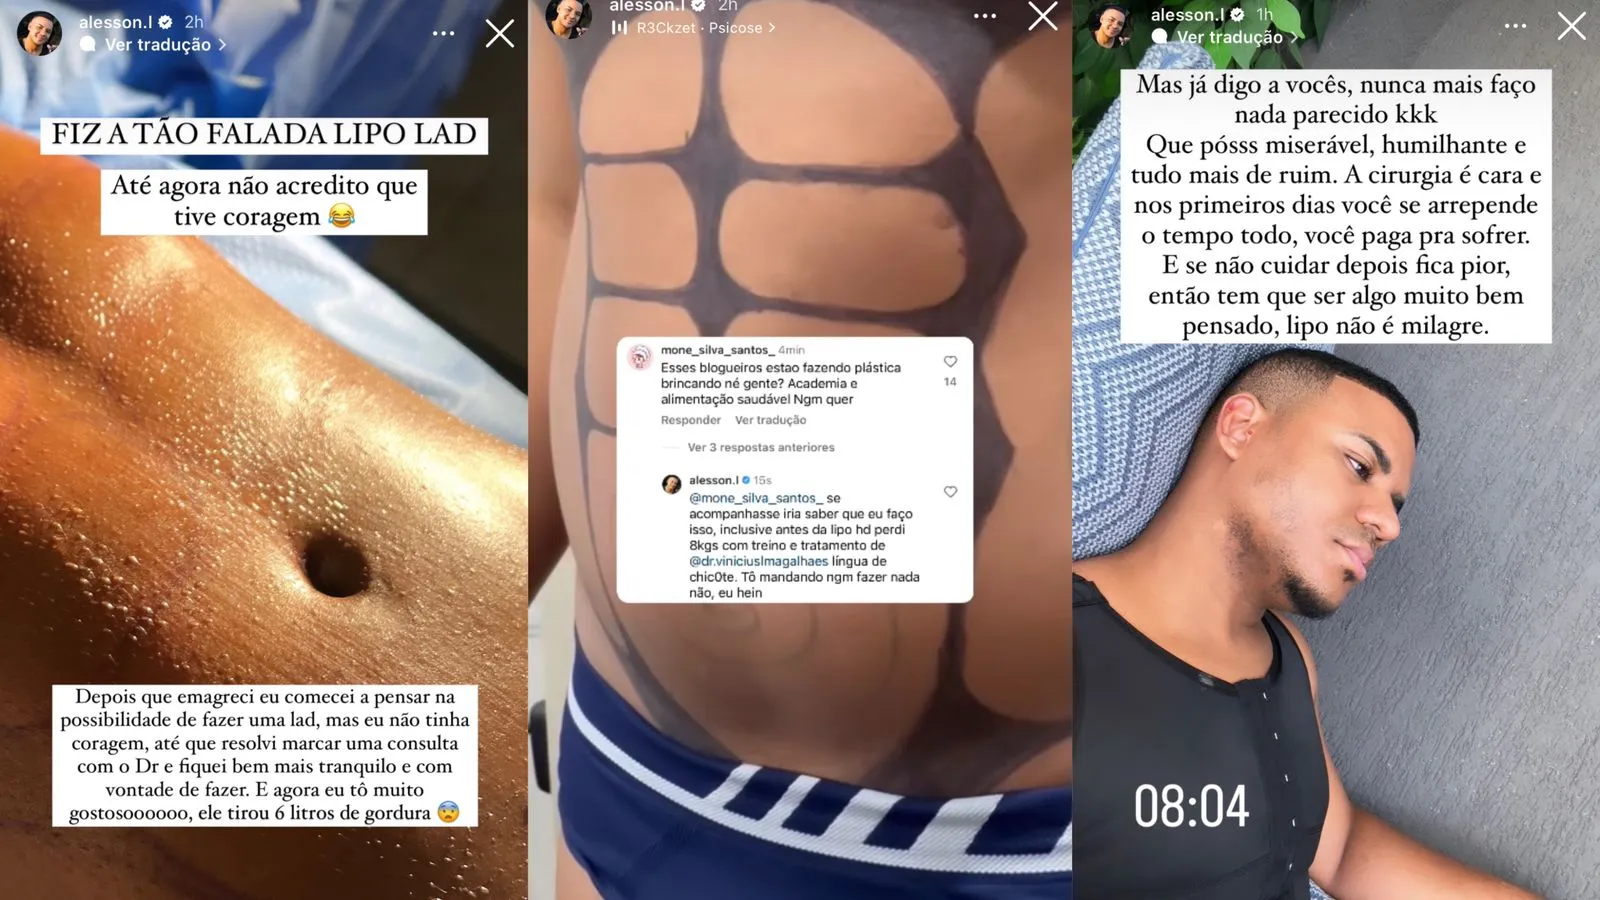 Influenciador digital compartilhou detalhes da cirurgia com os seguidores